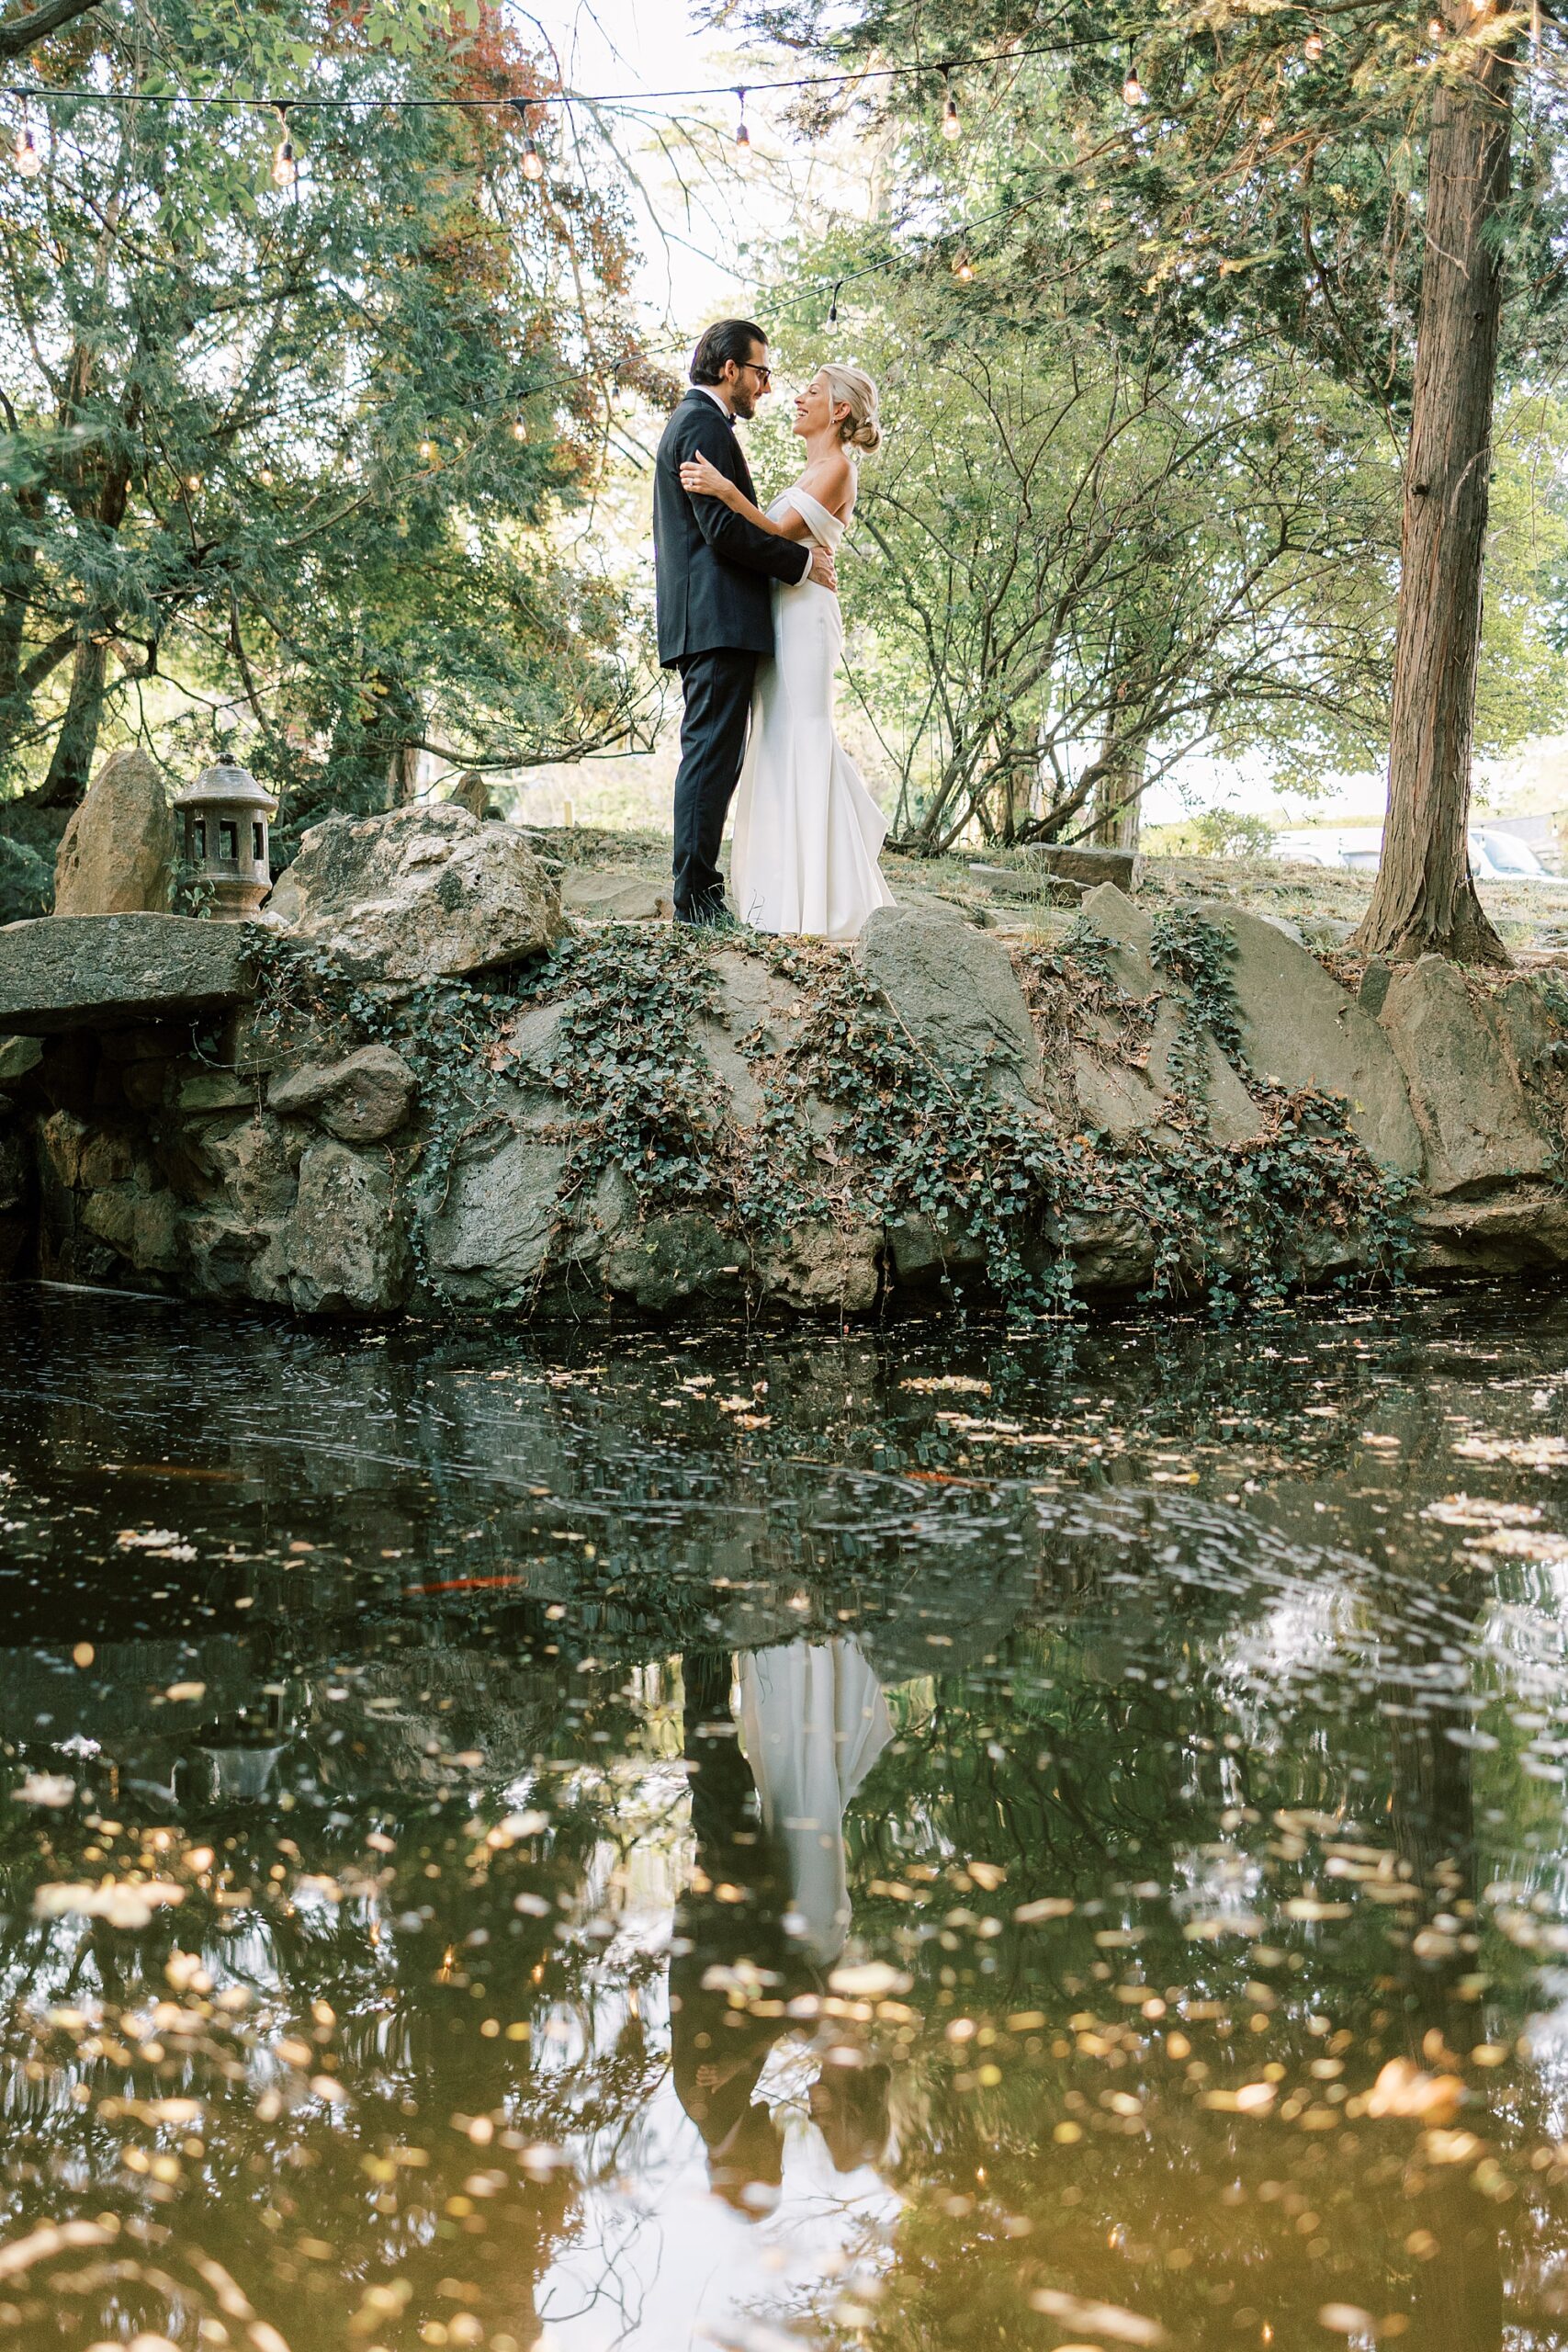 newlyweds hug on stone wall overlooking Japanese Gardens